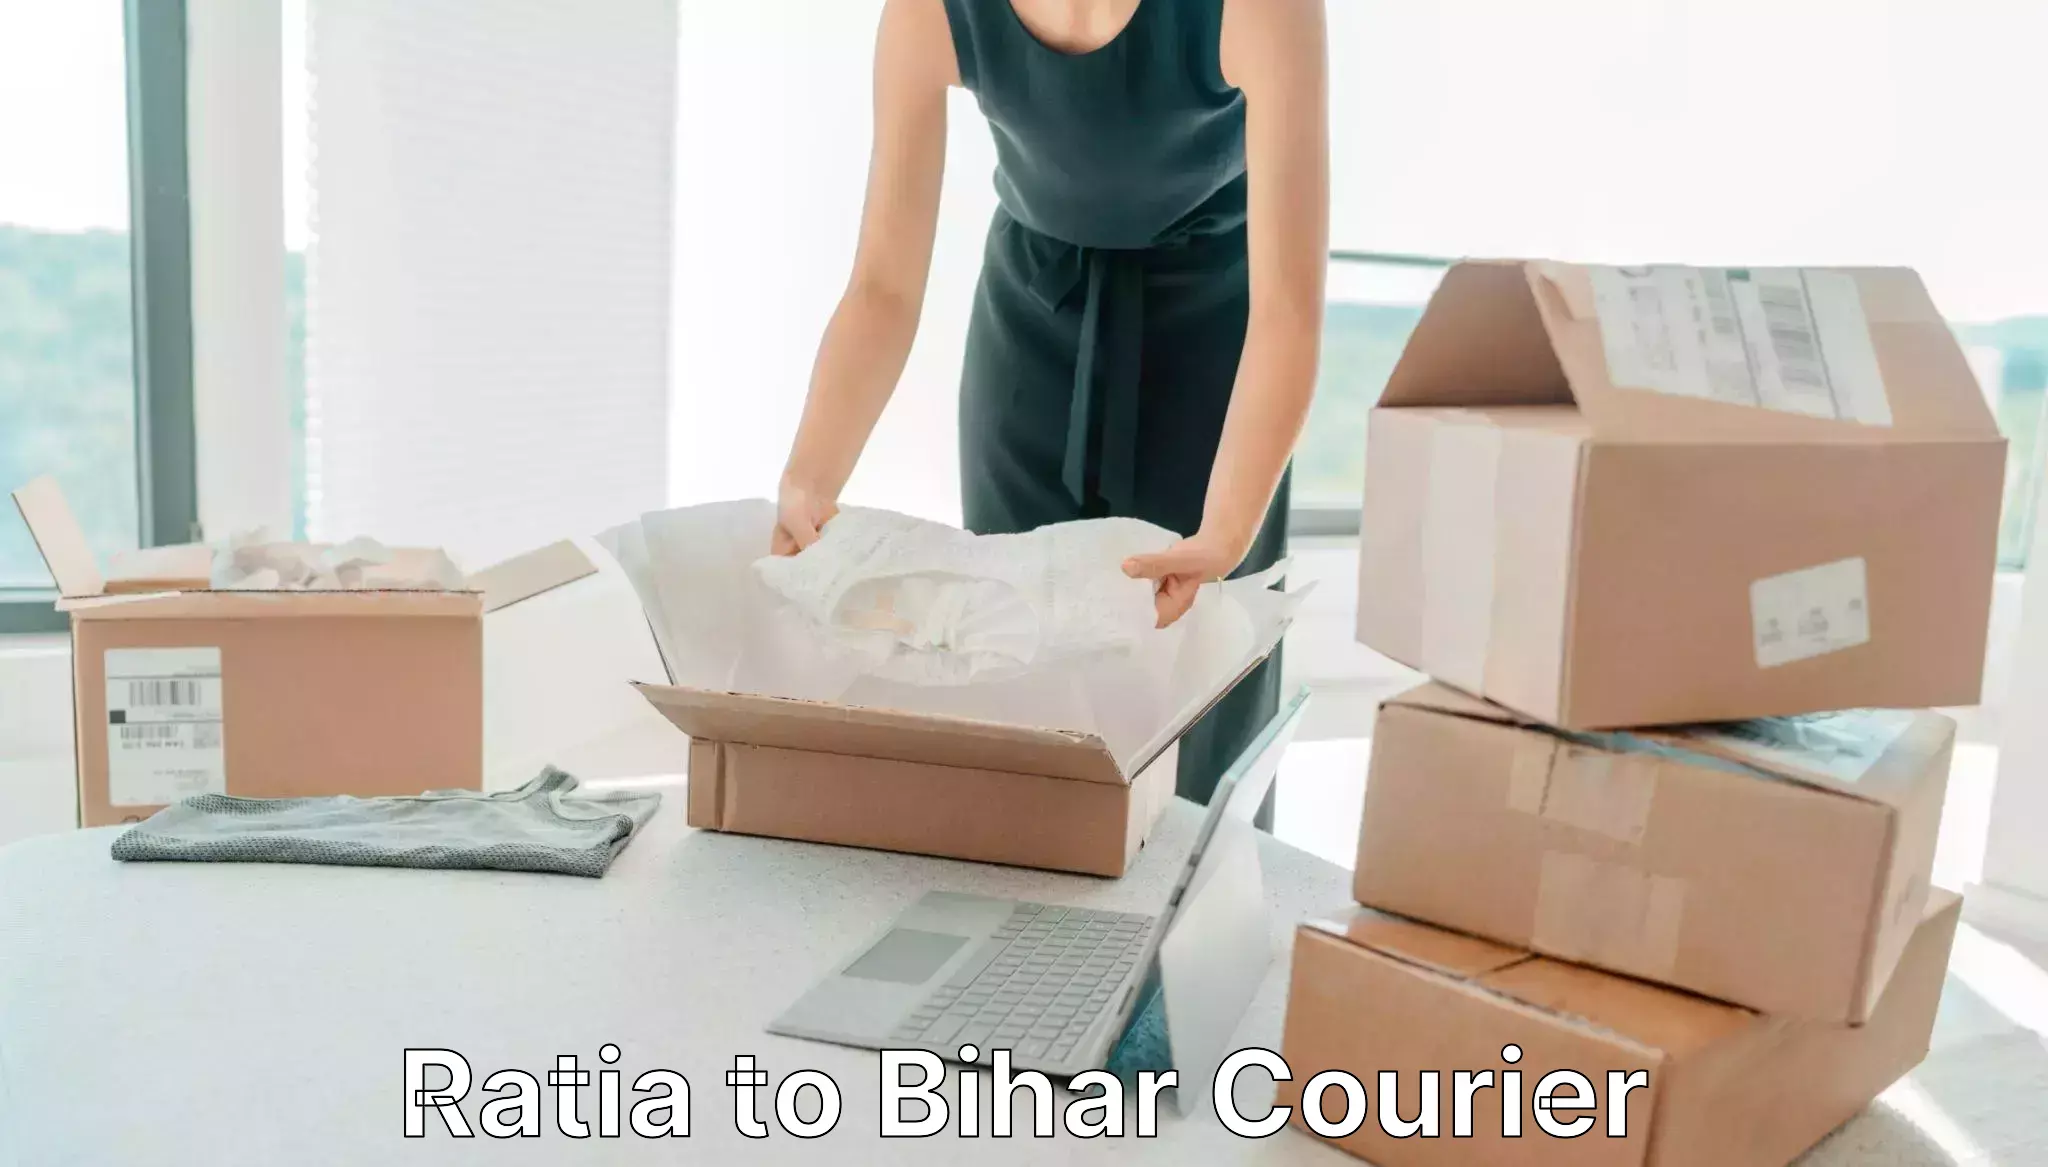 Affordable parcel service Ratia to Aurangabad Bihar